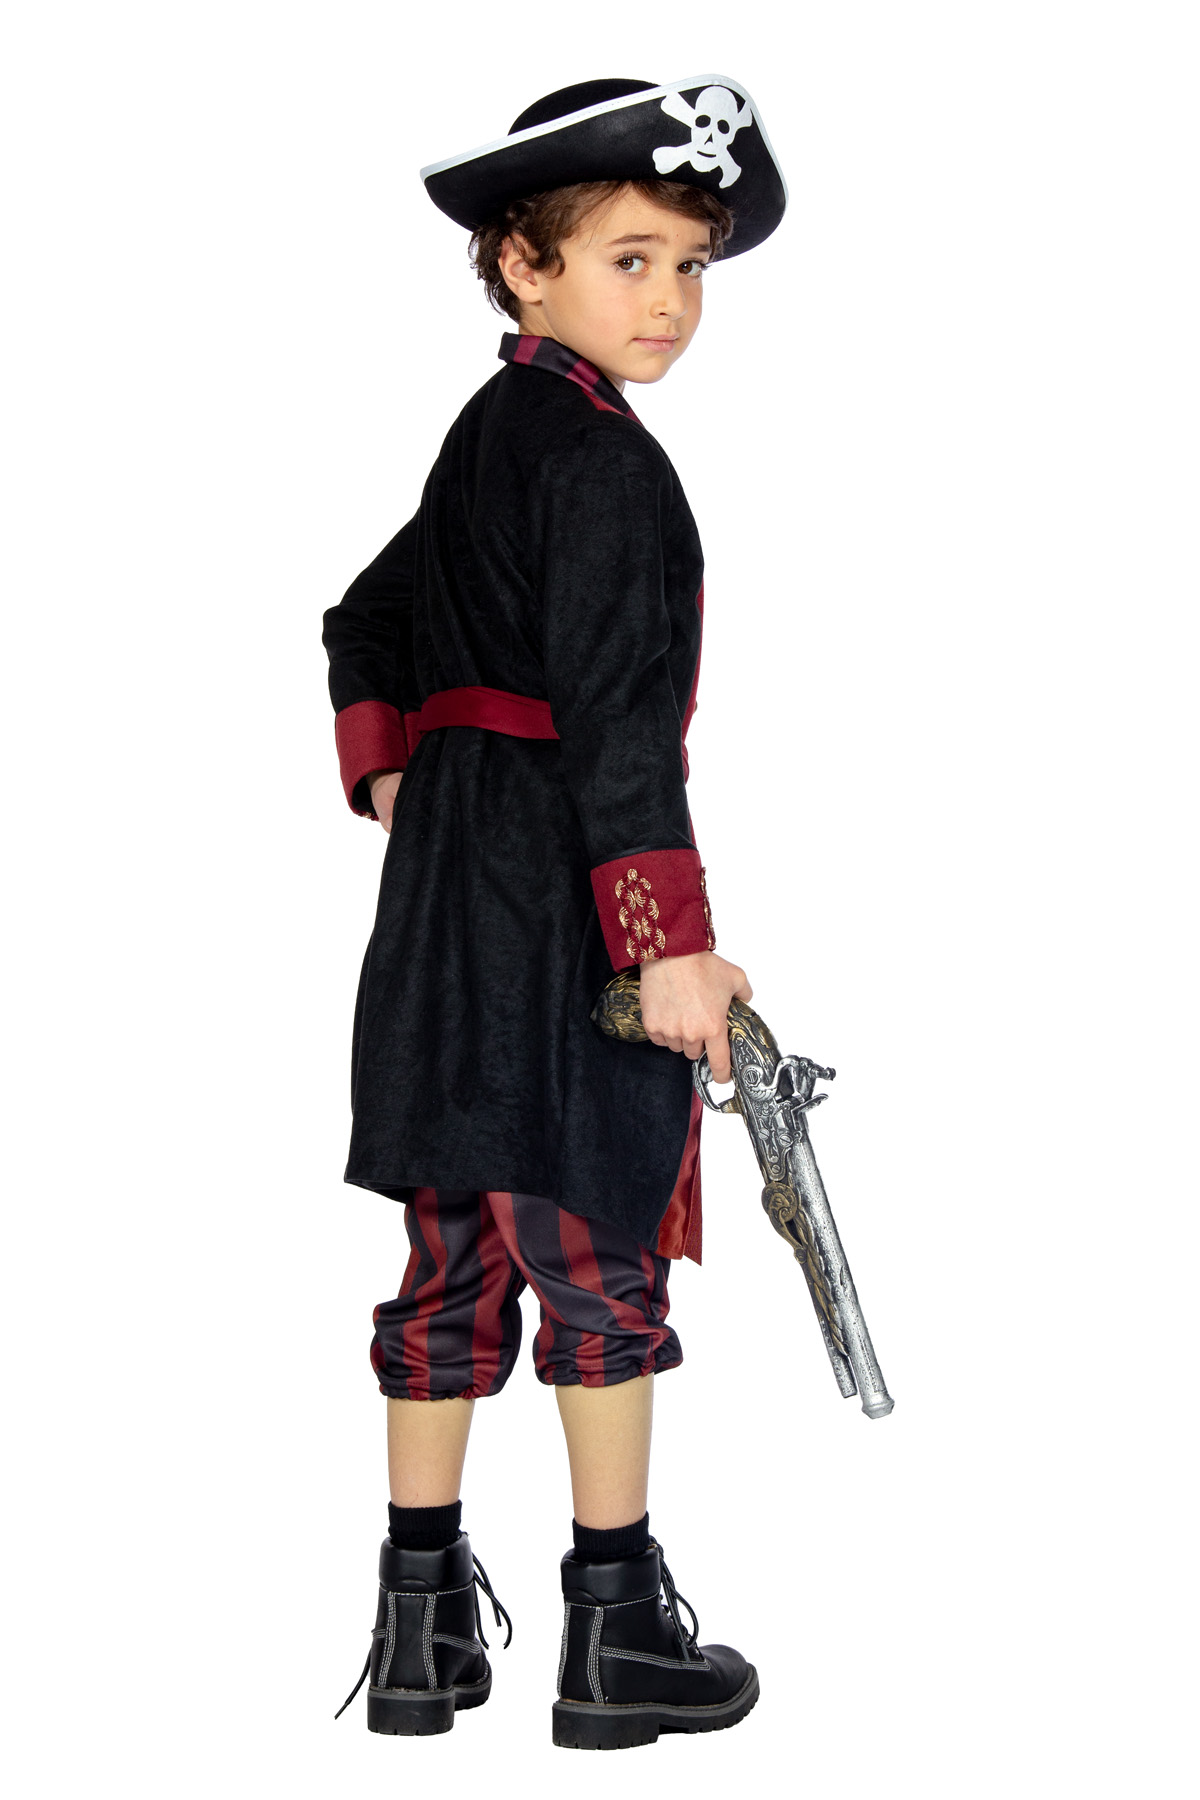 Piraat outfit jongen bordeau/zwart